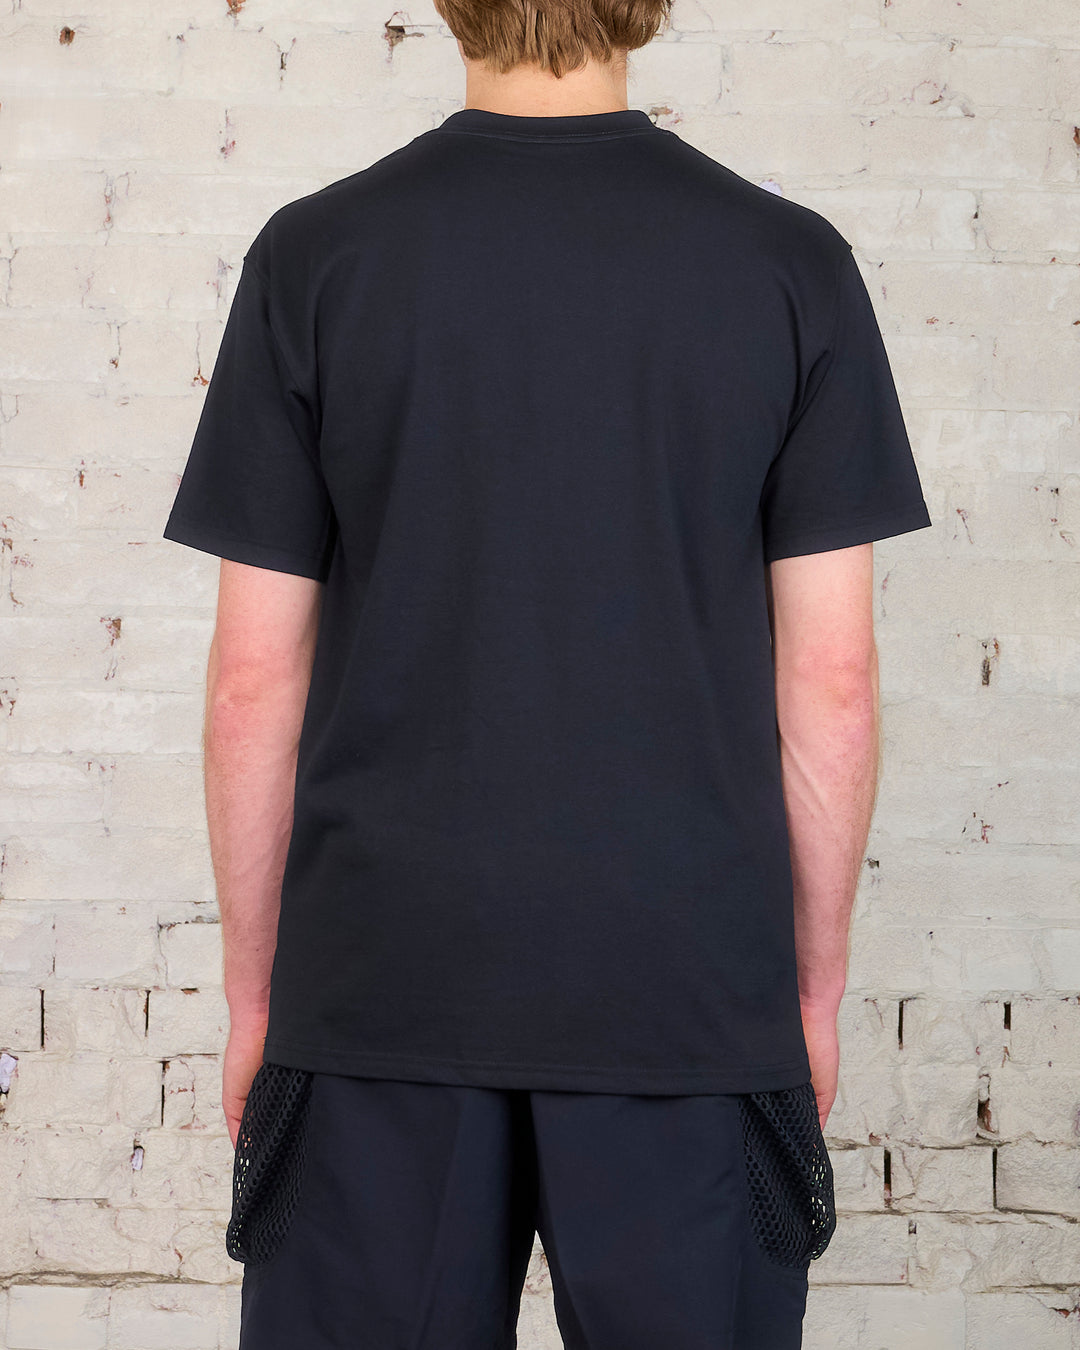 Nike ACG HBR Logo Short-Sleeve T-Shirt Black